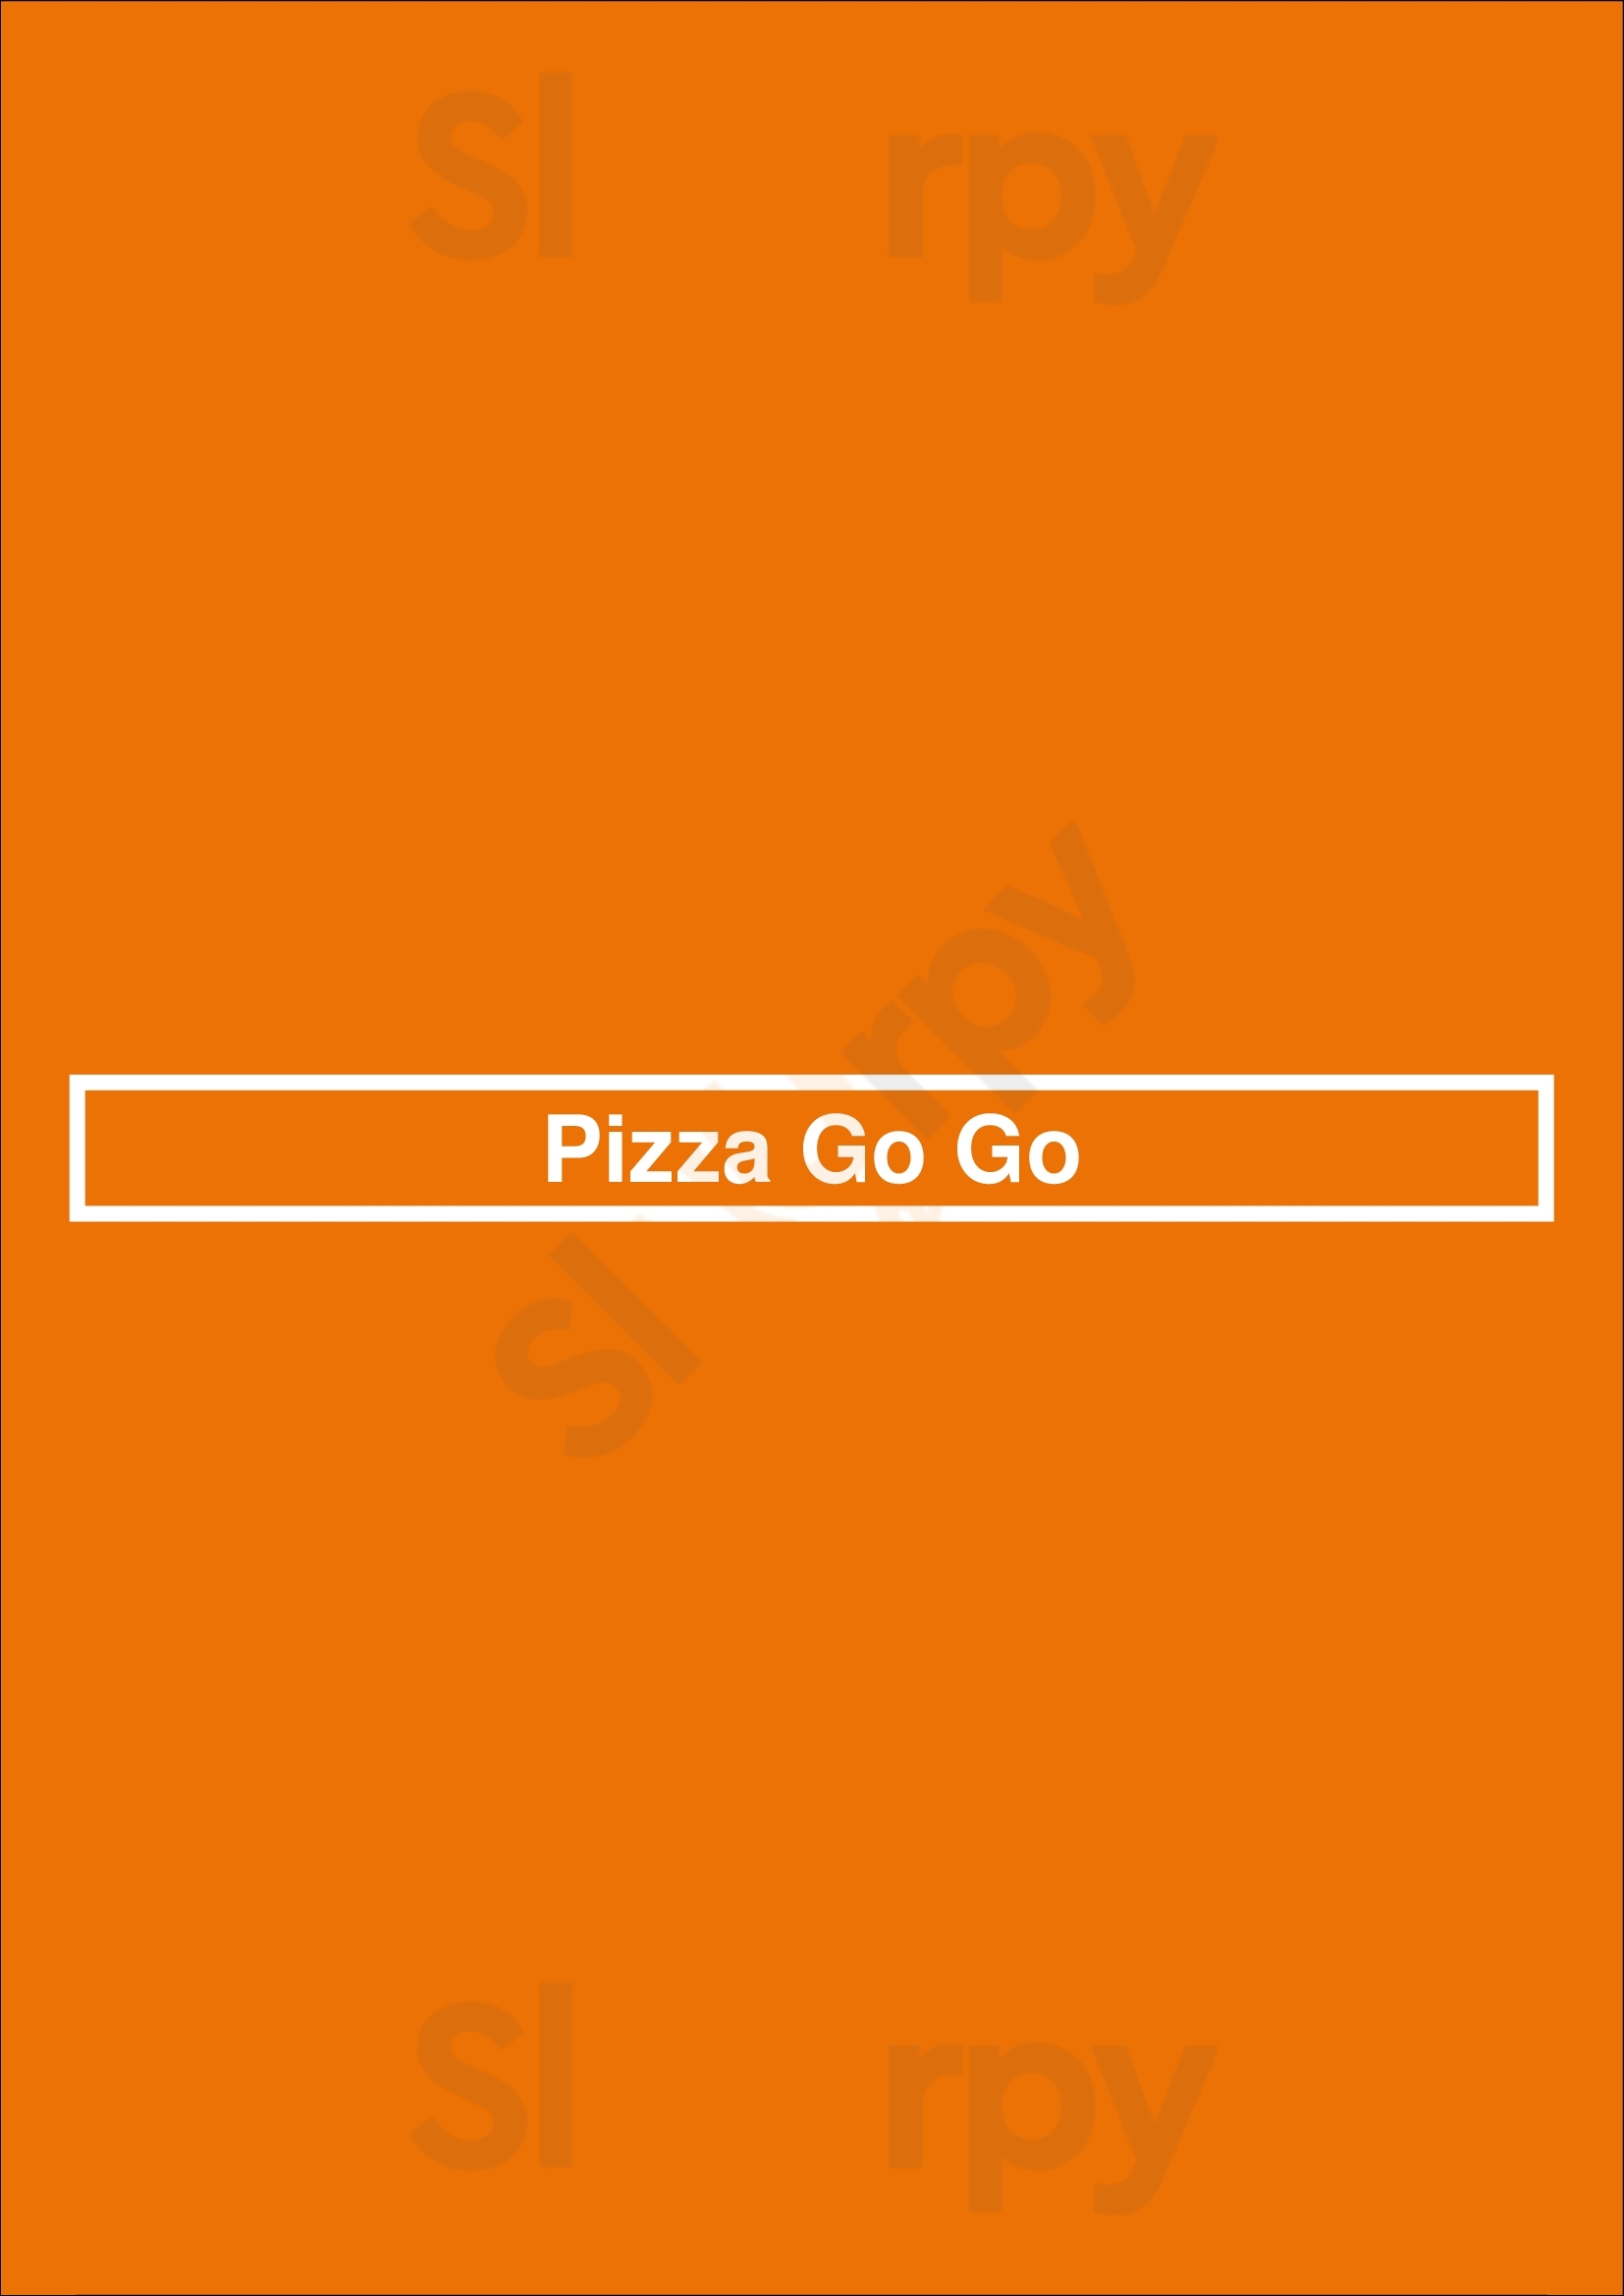 Pizza Go Go Southampton Menu - 1